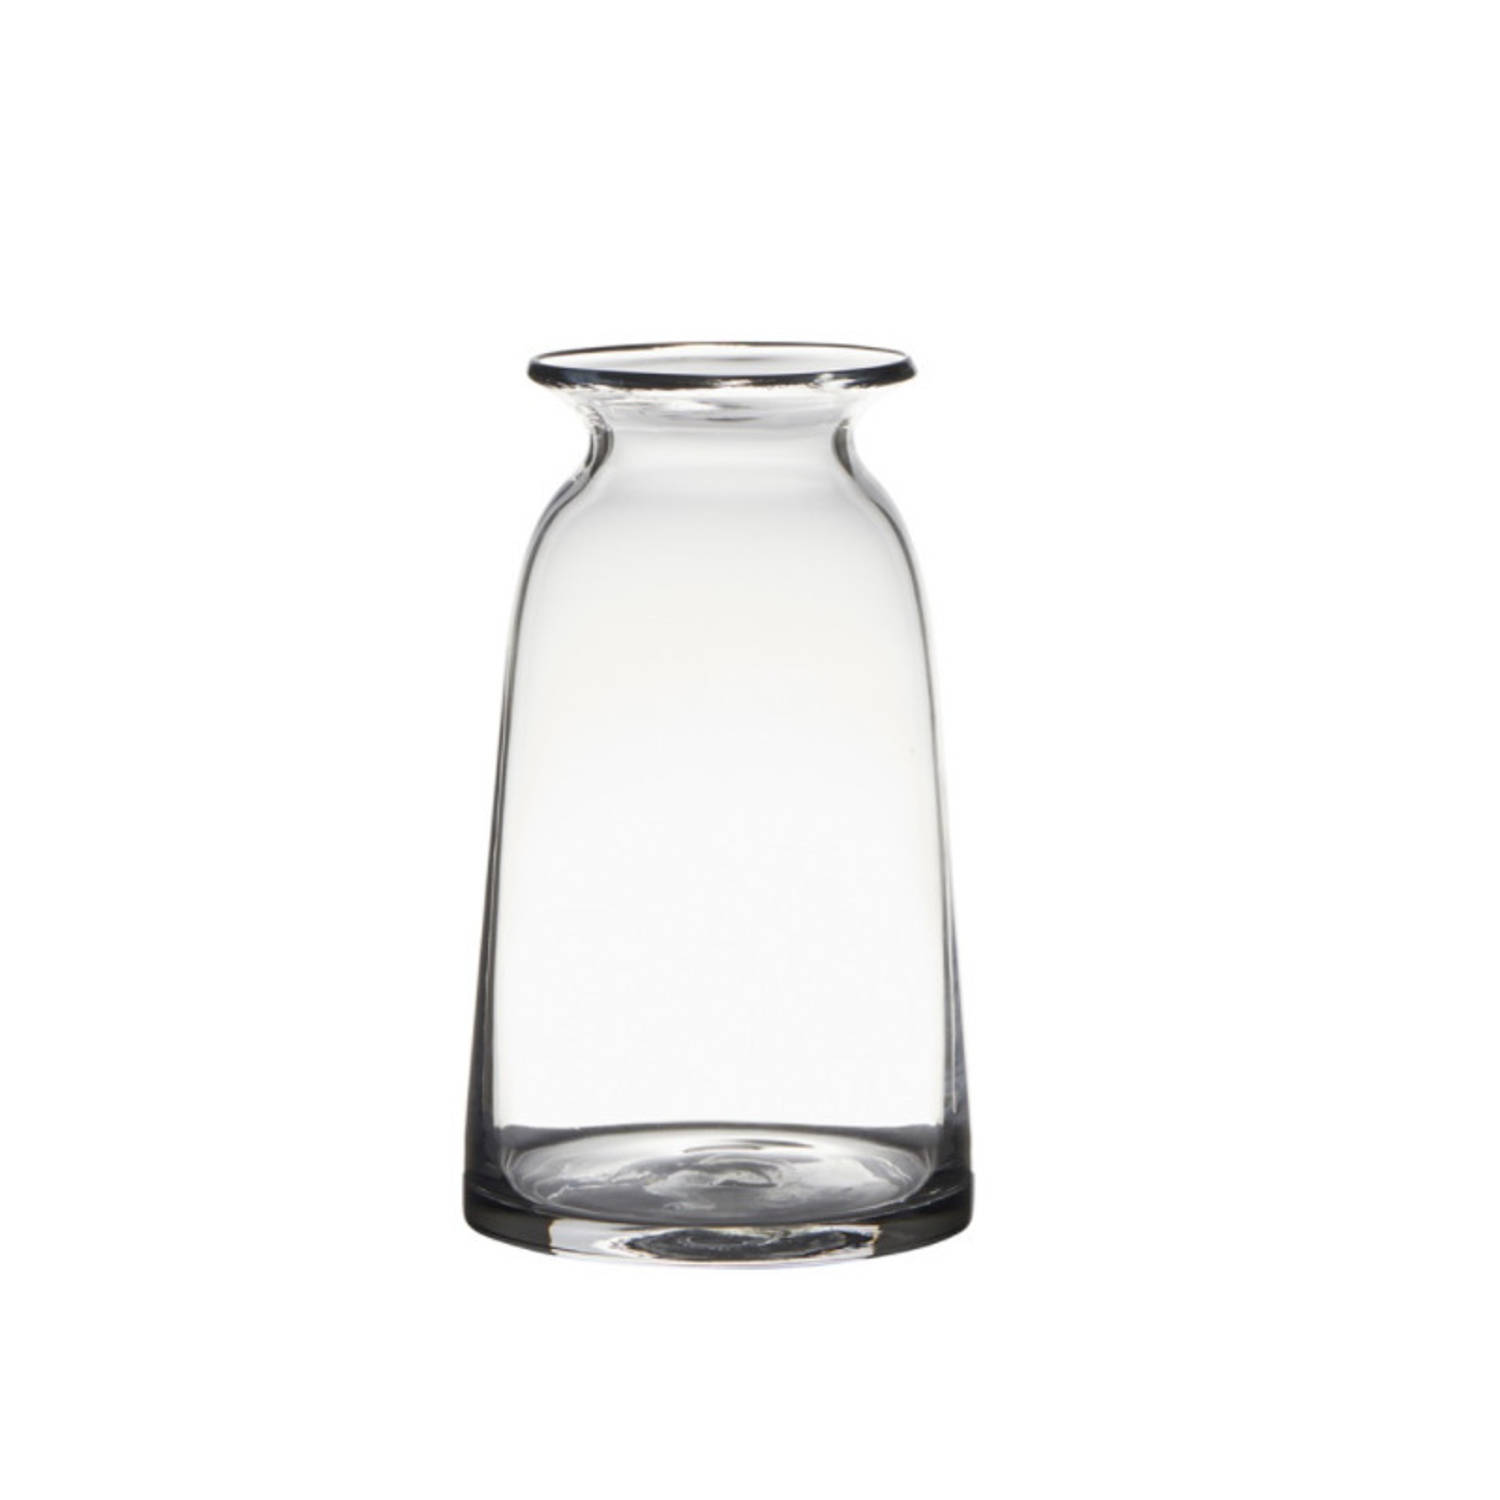 Bellatio Design Transparante Home-basics Vaas/vazen Van Glas 23.5 X 12.5 Cm - Bloemen/takken/boeketten Vaas Voor Binnen Gebruik